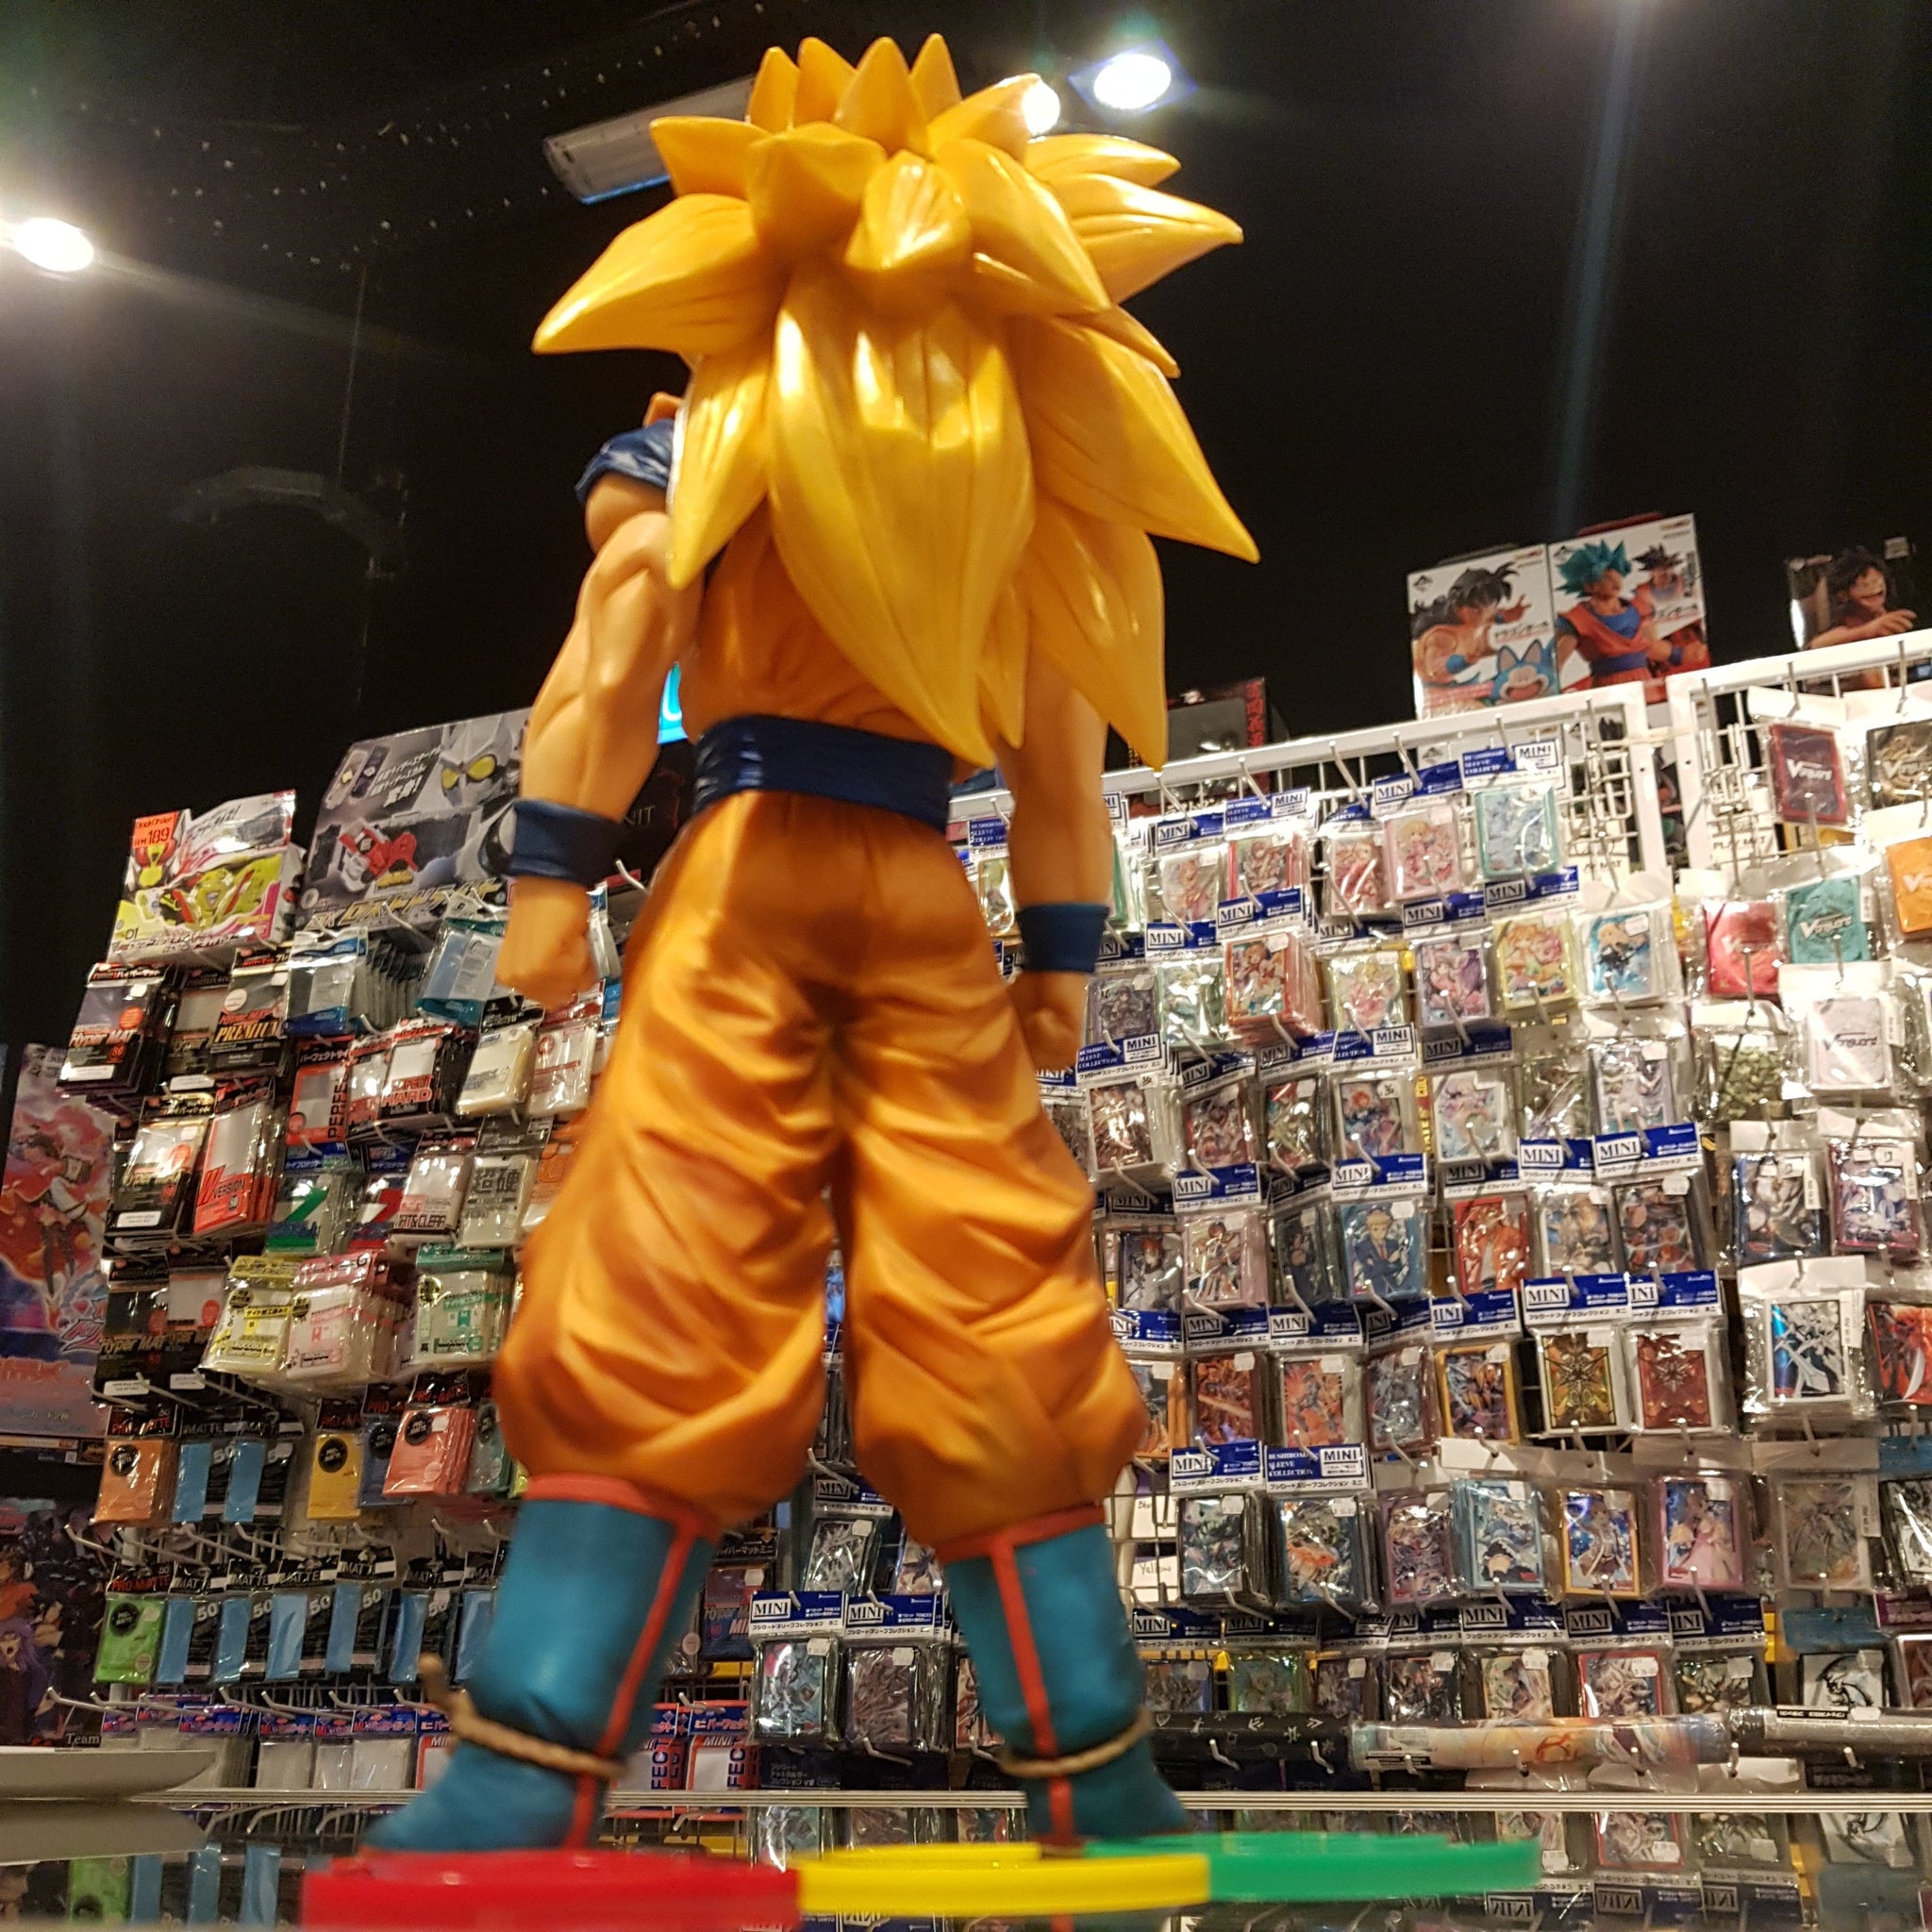 Goku Super Saiyan 3 - Grandista Nero - Dragon Ball Banpresto action figure